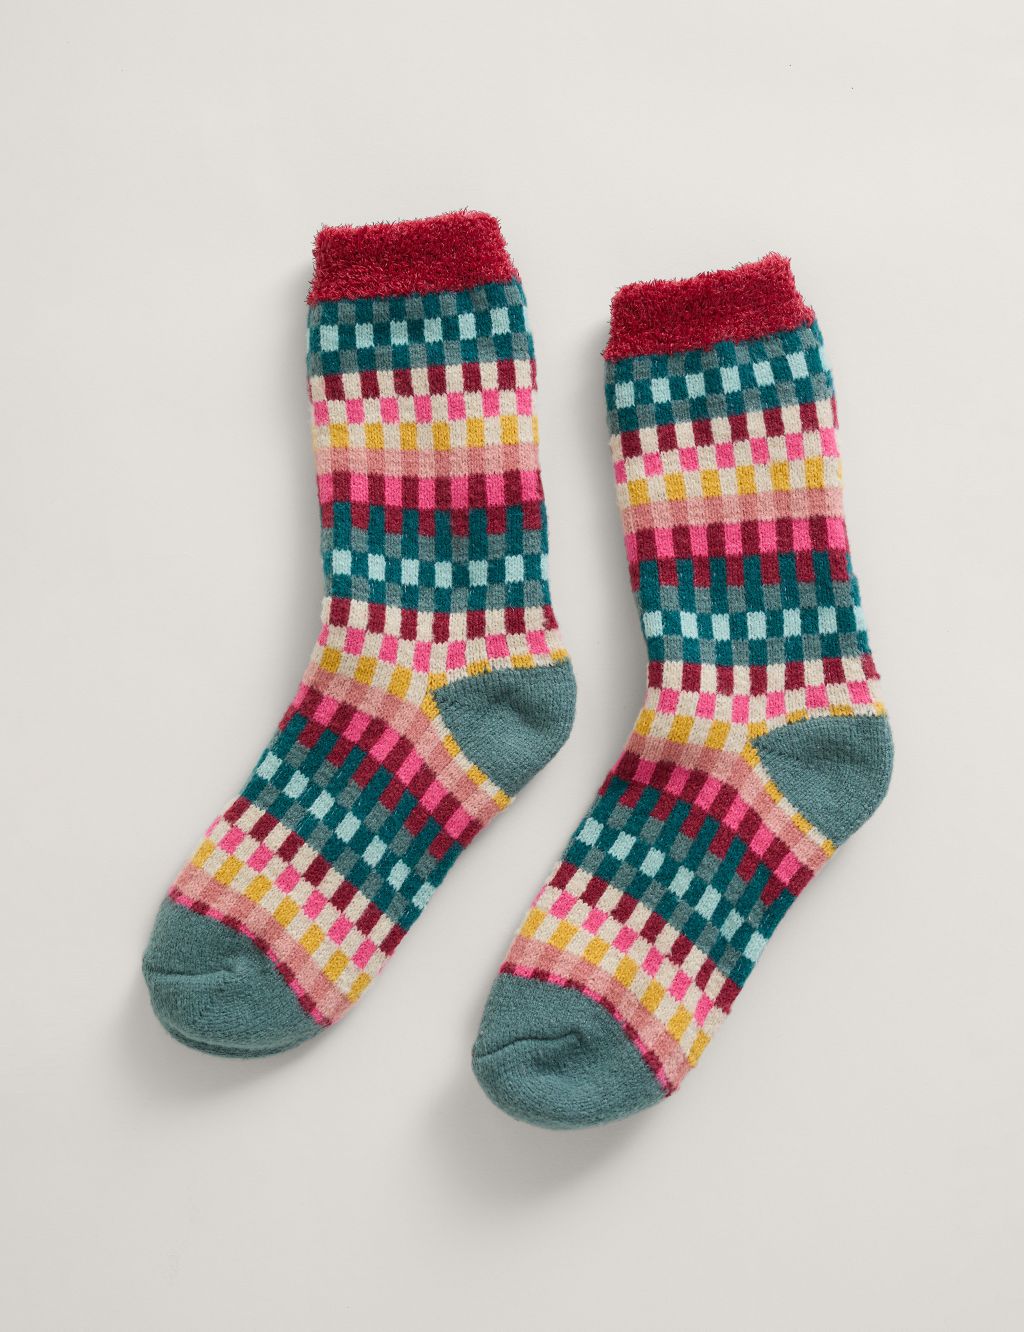 Patterned Ankle High Socks image 1